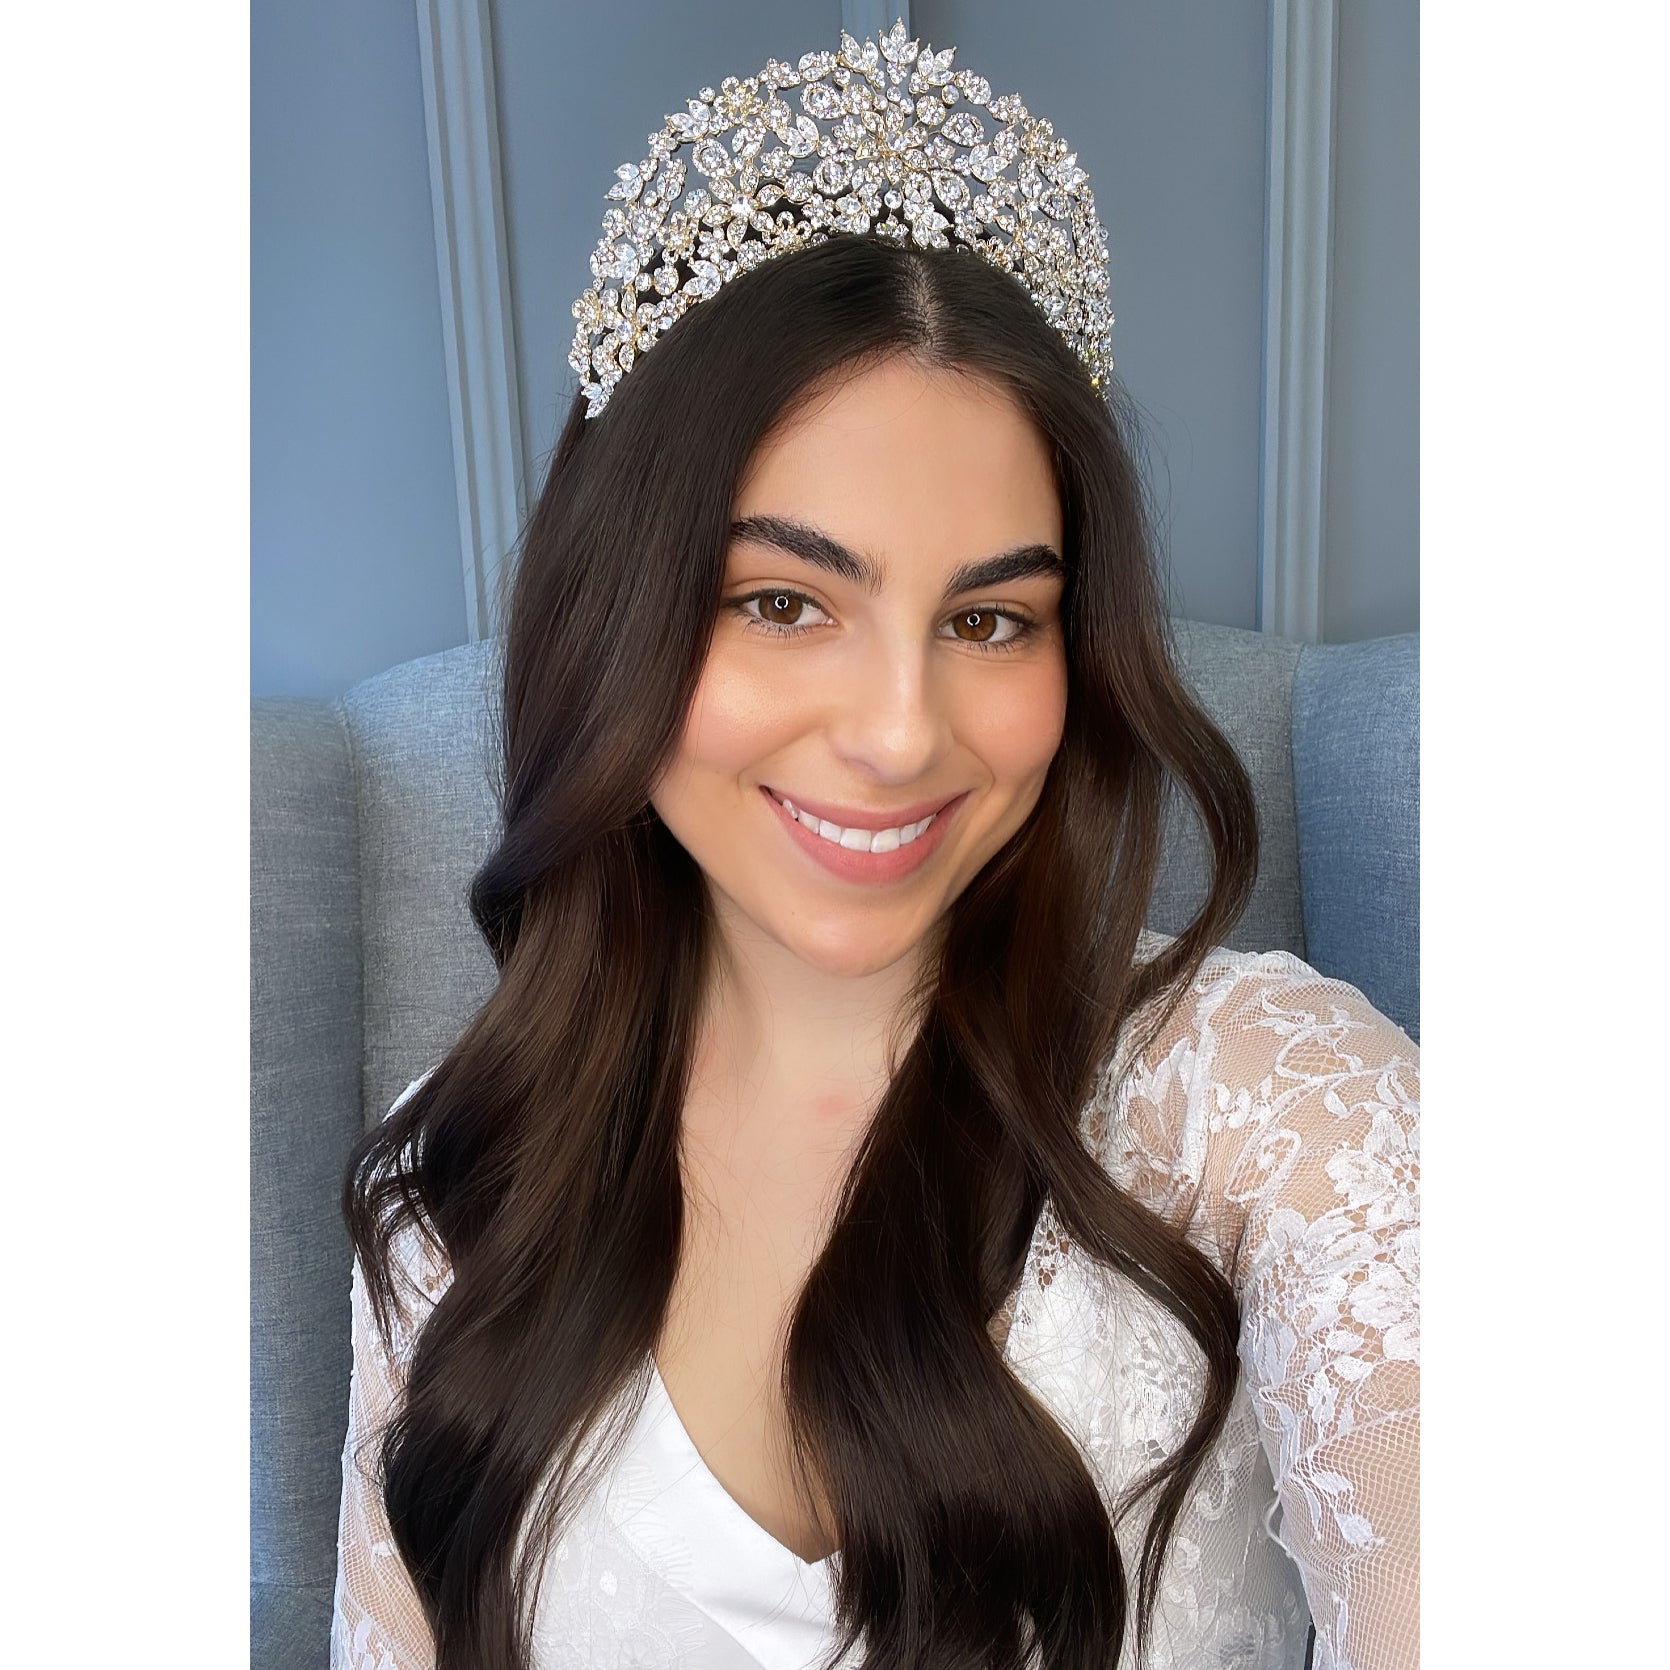 Carlotta Bridal Crown Hair Accessories - Tiara & Crown    